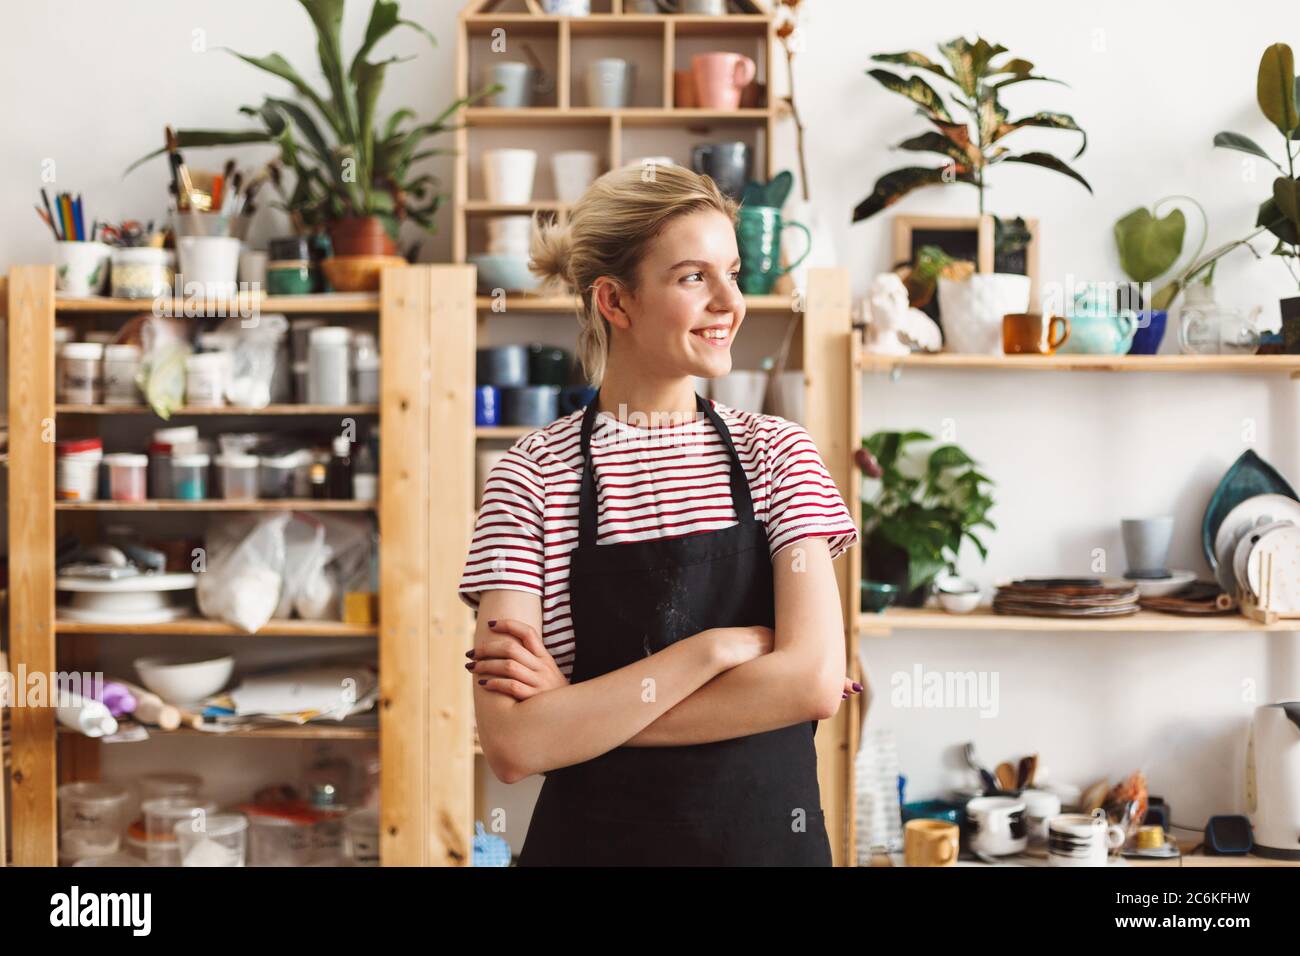 Chica sonriente en delantal negro y camiseta felizmente mirando a un lado con platos hechos a mano en estantes en el fondo en el estudio de cerámica. Foto de stock